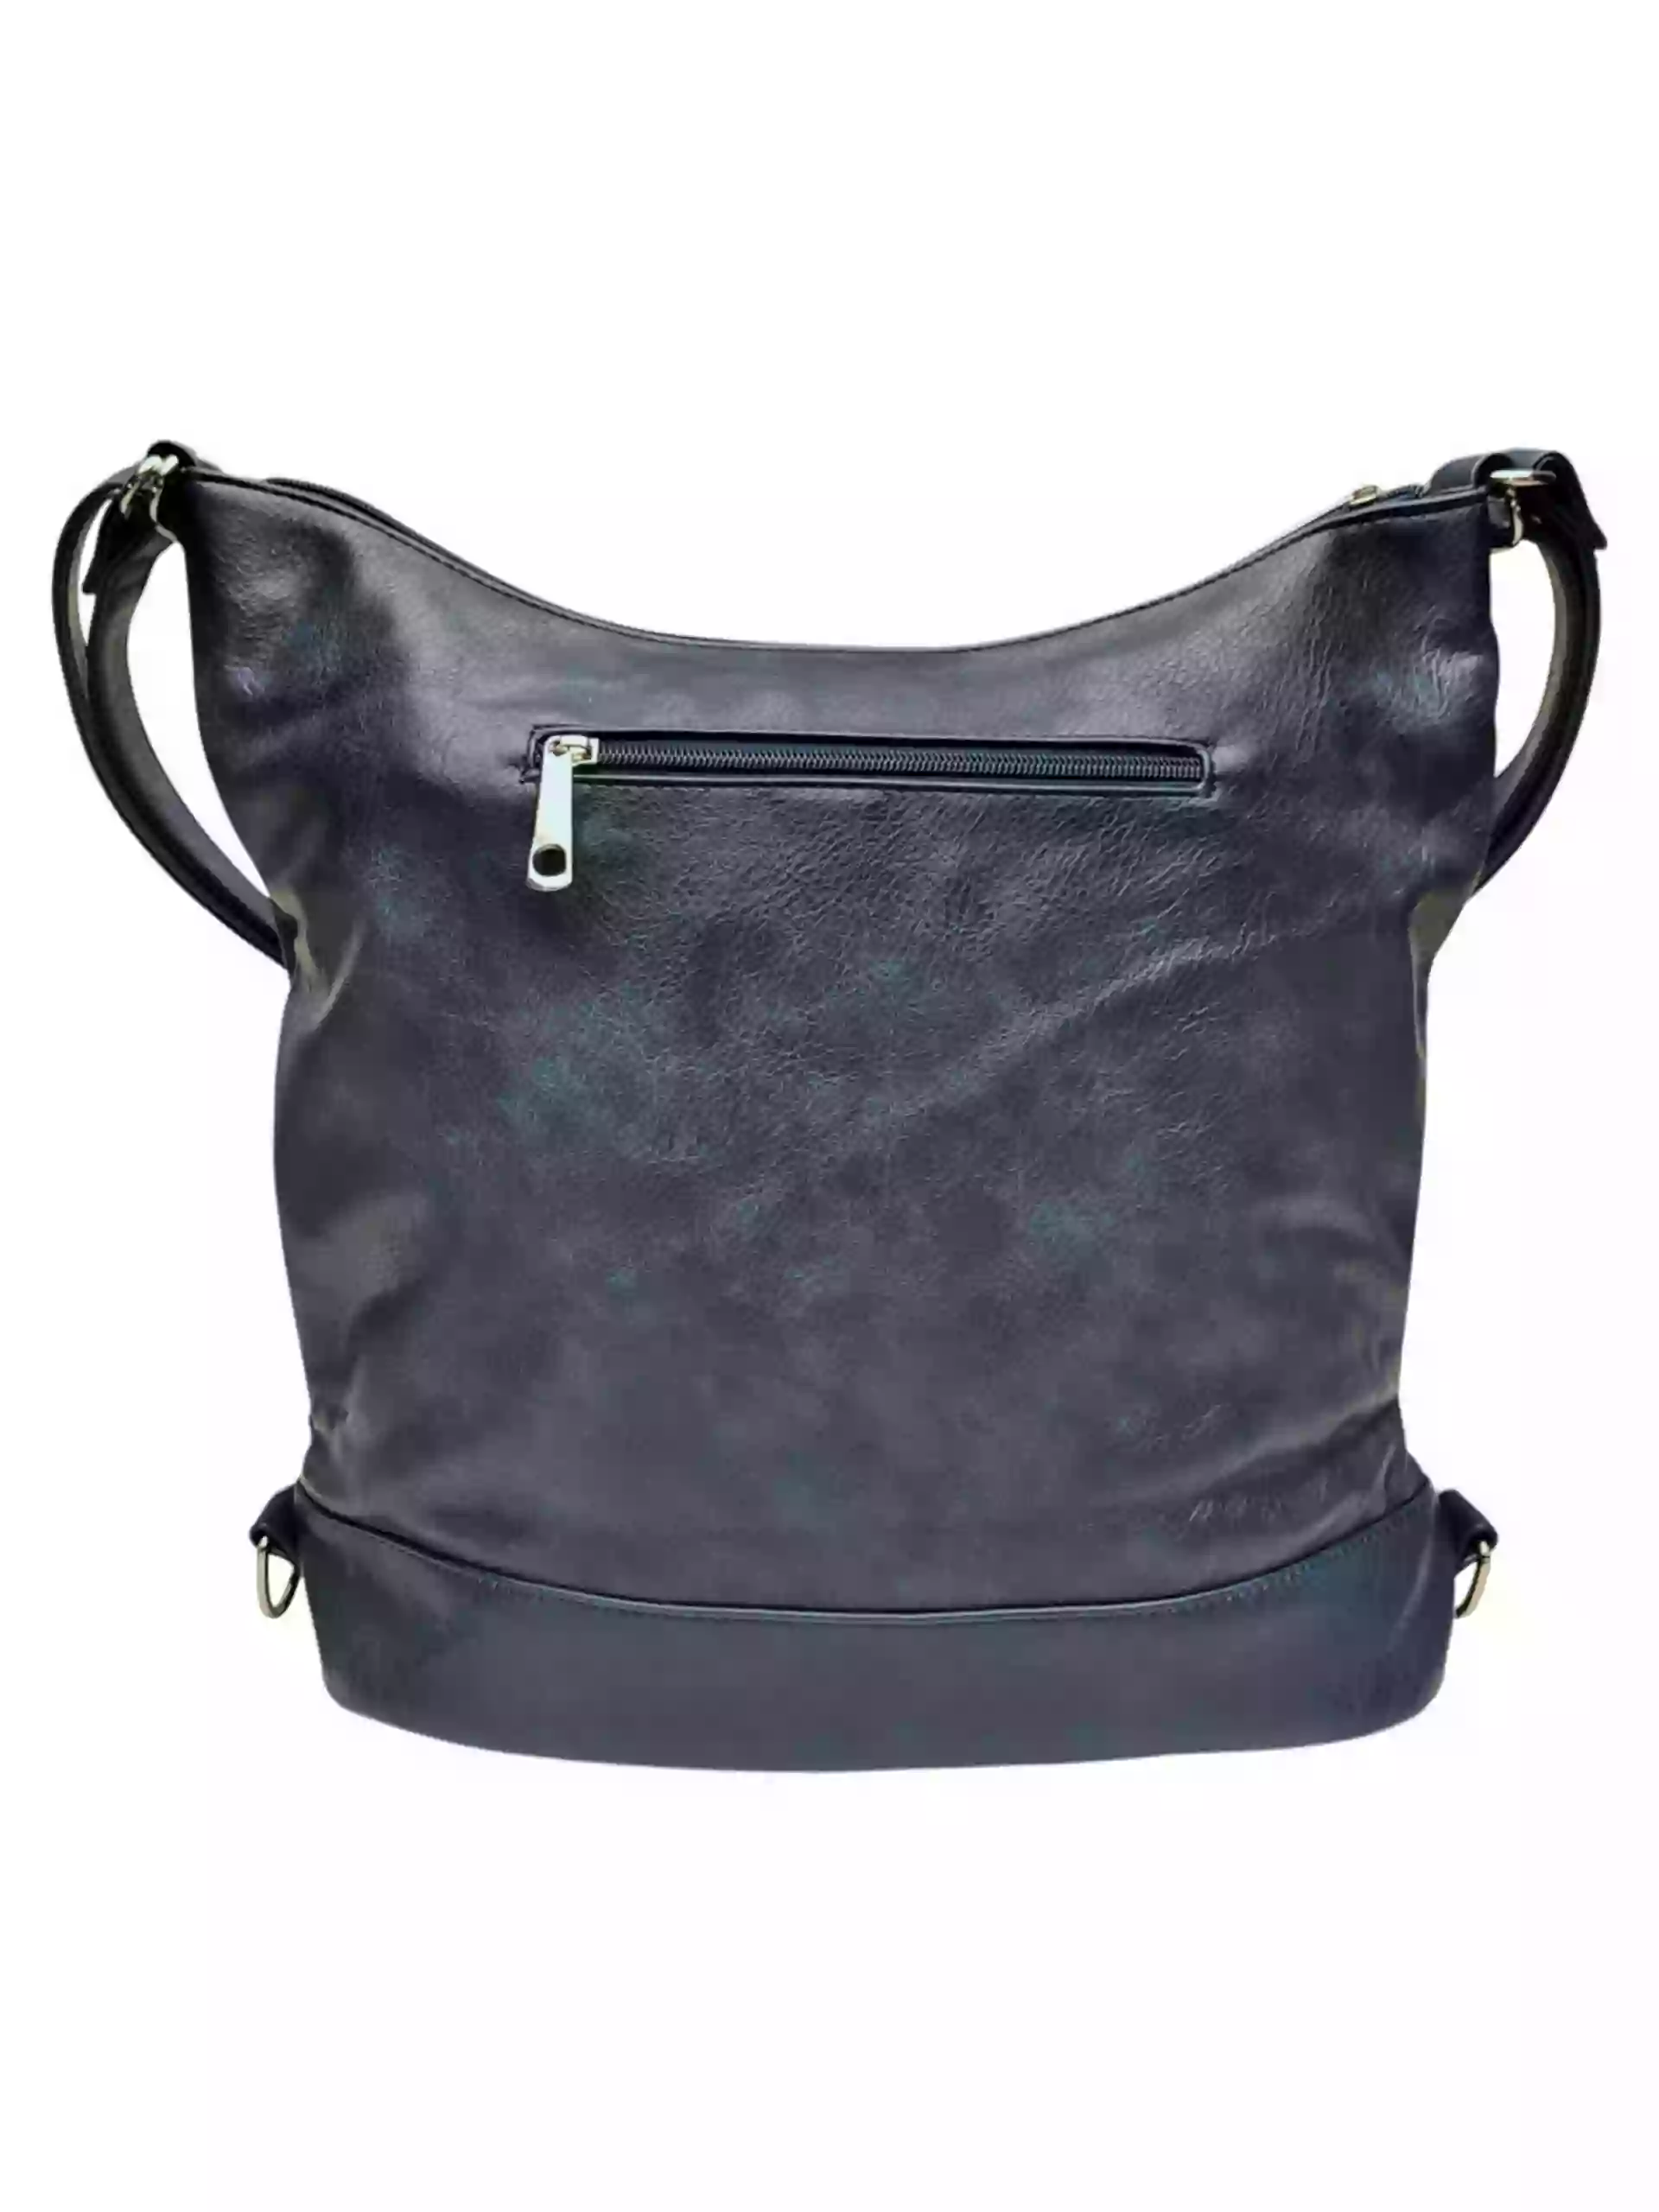 Velký tmavě modrý kabelko-batoh s kapsami, Tapple, H23906, zadní strana kabelko-batohu